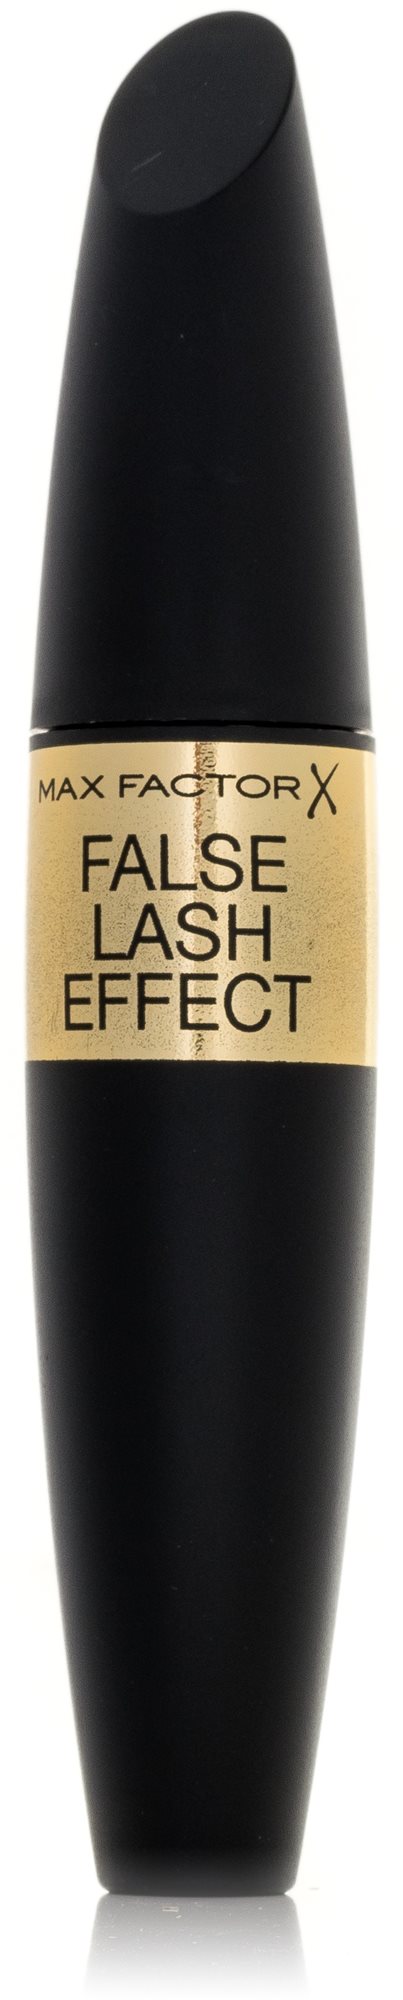 MAX FACTOR False Lash Effect Mascara 02 Black/Brown 13 ml